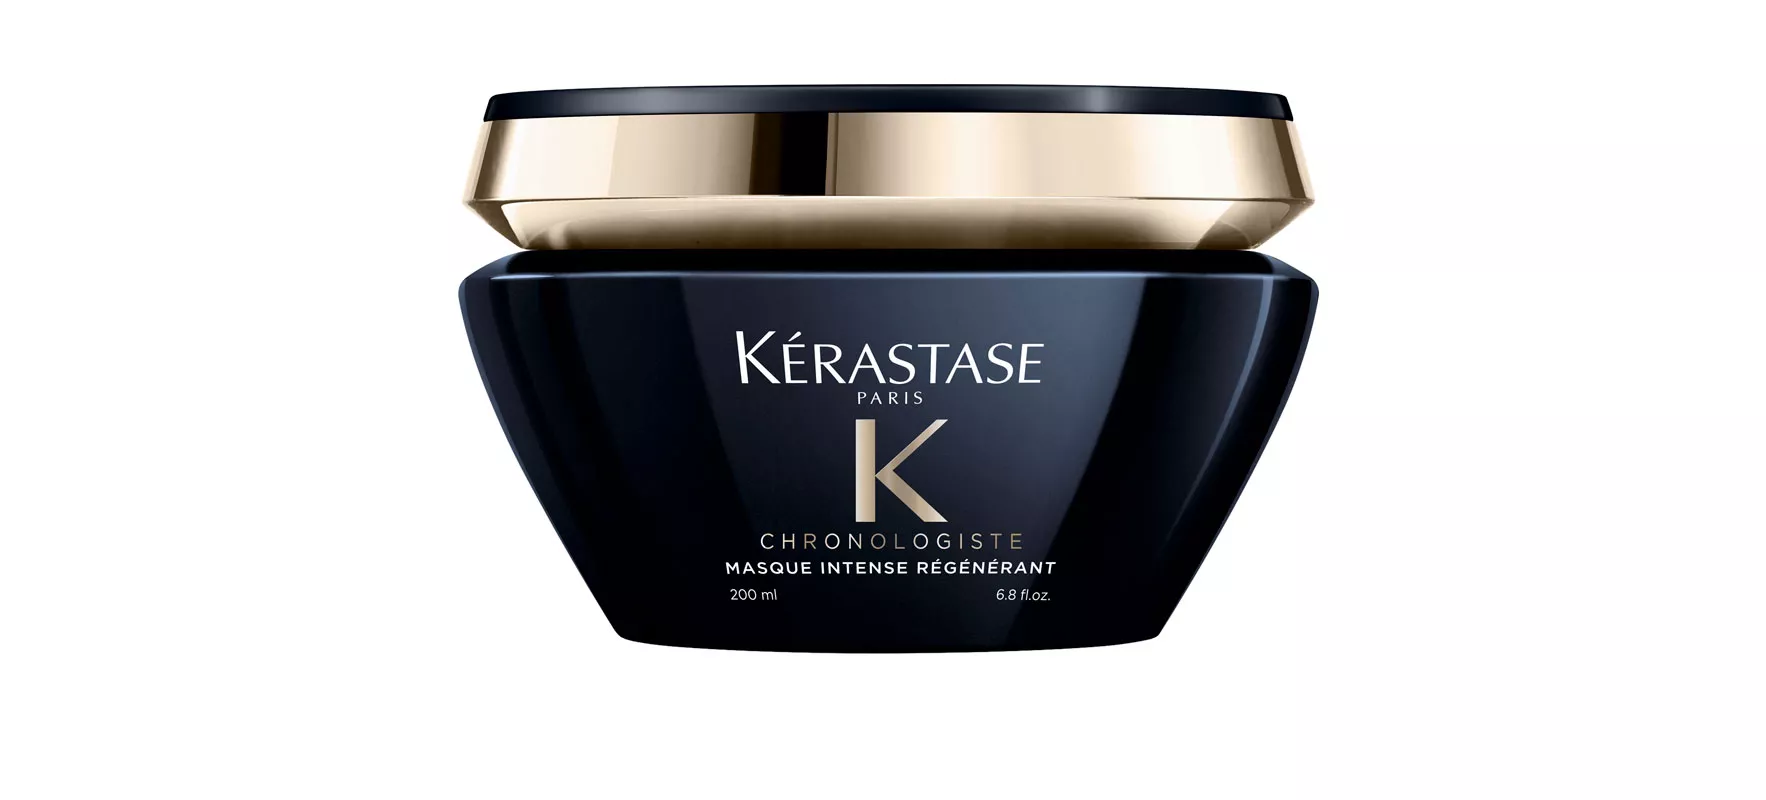 Kérastase Chronologist -hiusnaamio hoitaa sekä hiuspohjaa että hiuksia, sisältää kosteuttavaa hyaluronihappoa, E-vitamiinia ja vaurioita korjaavaa abyssineä, 200 ml 58,50 e. 